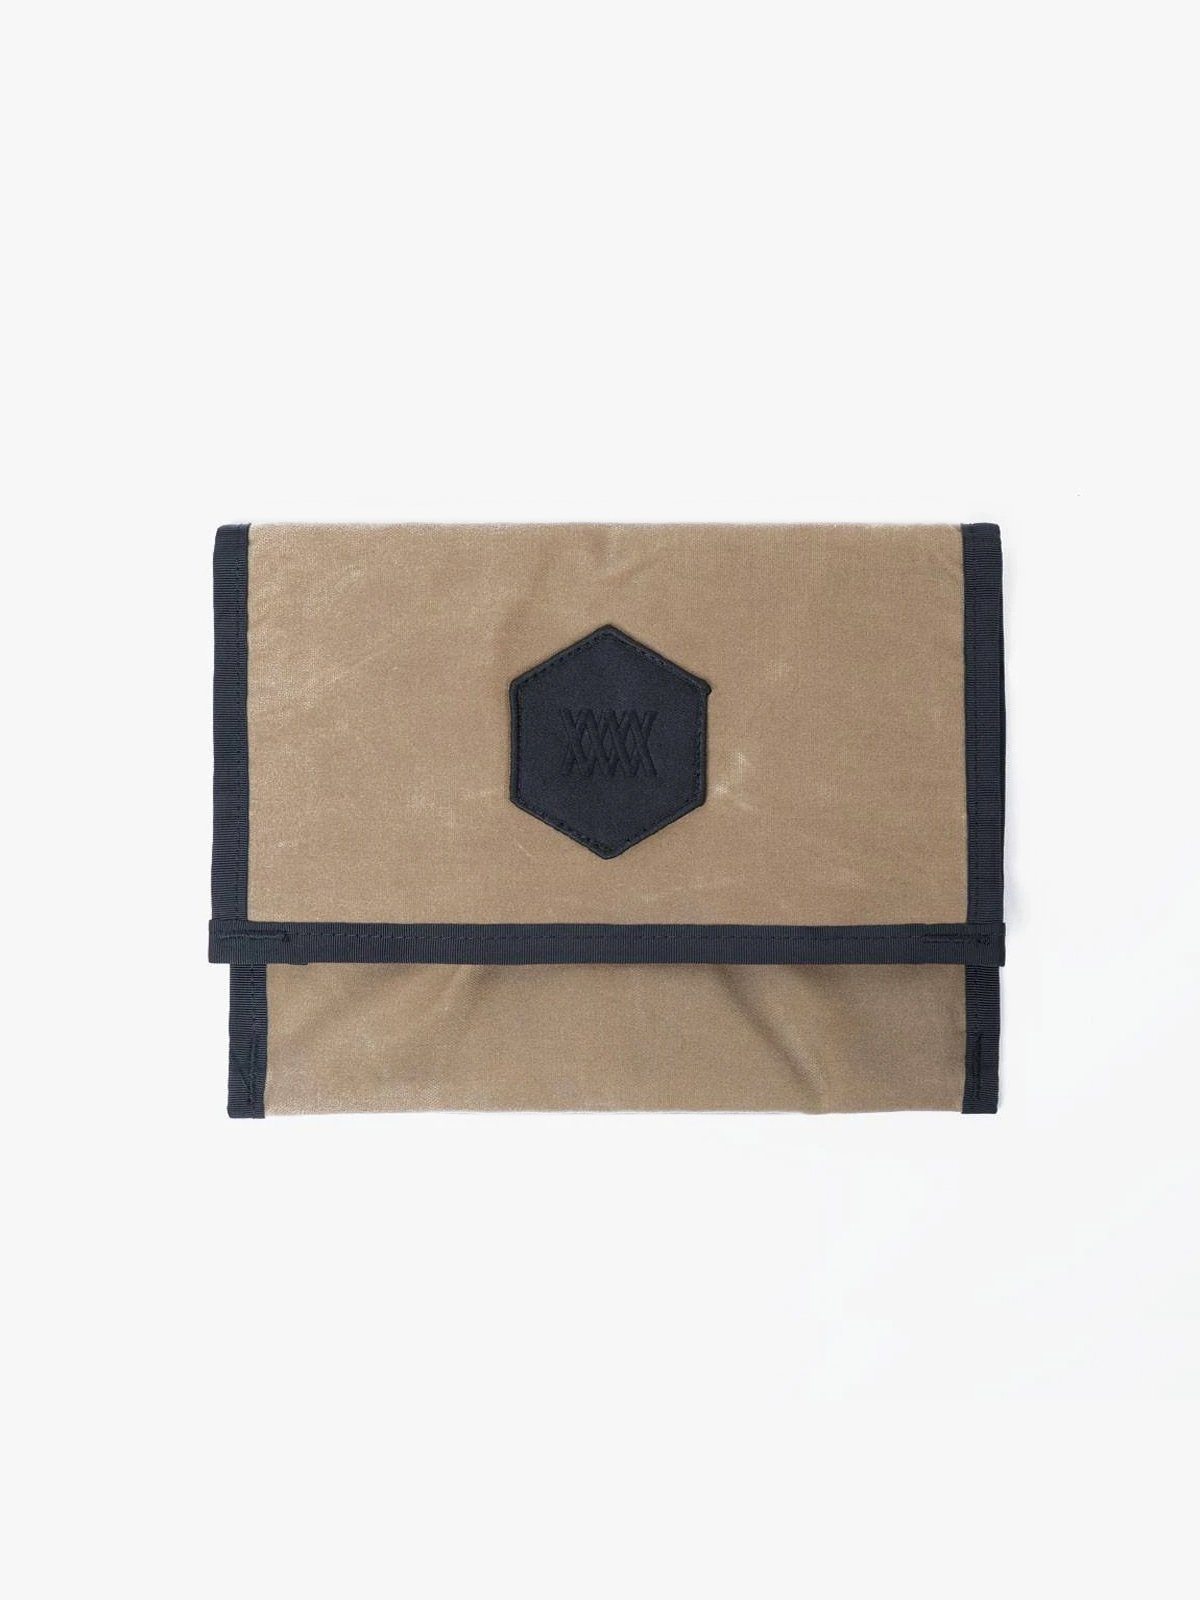 Arkiv Mini Folio från Mission Workshop - vädertåliga väskor och tekniska kläder - San Francisco och Los Angeles - byggda för att tåla - garanterat för alltid